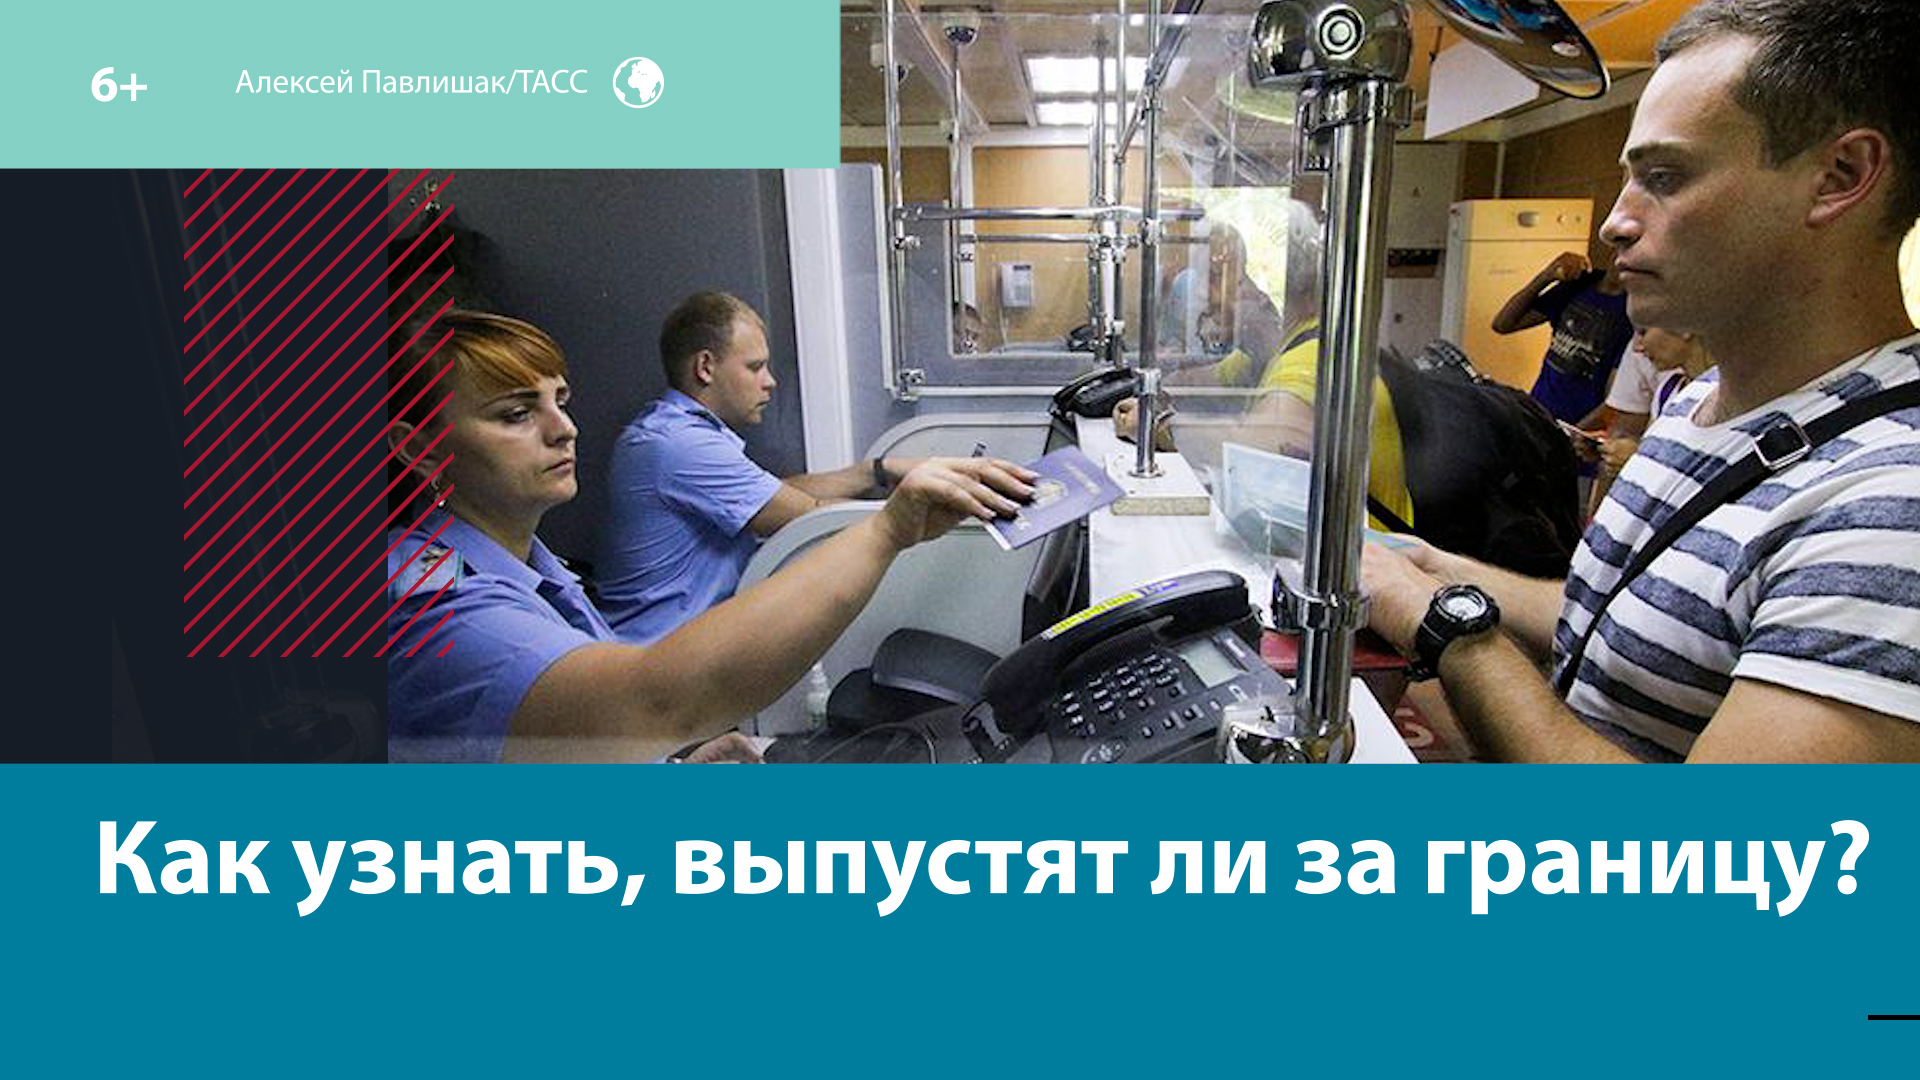 В сети предлагают «пробить» мужчину по базе военкоматов – Москва FM